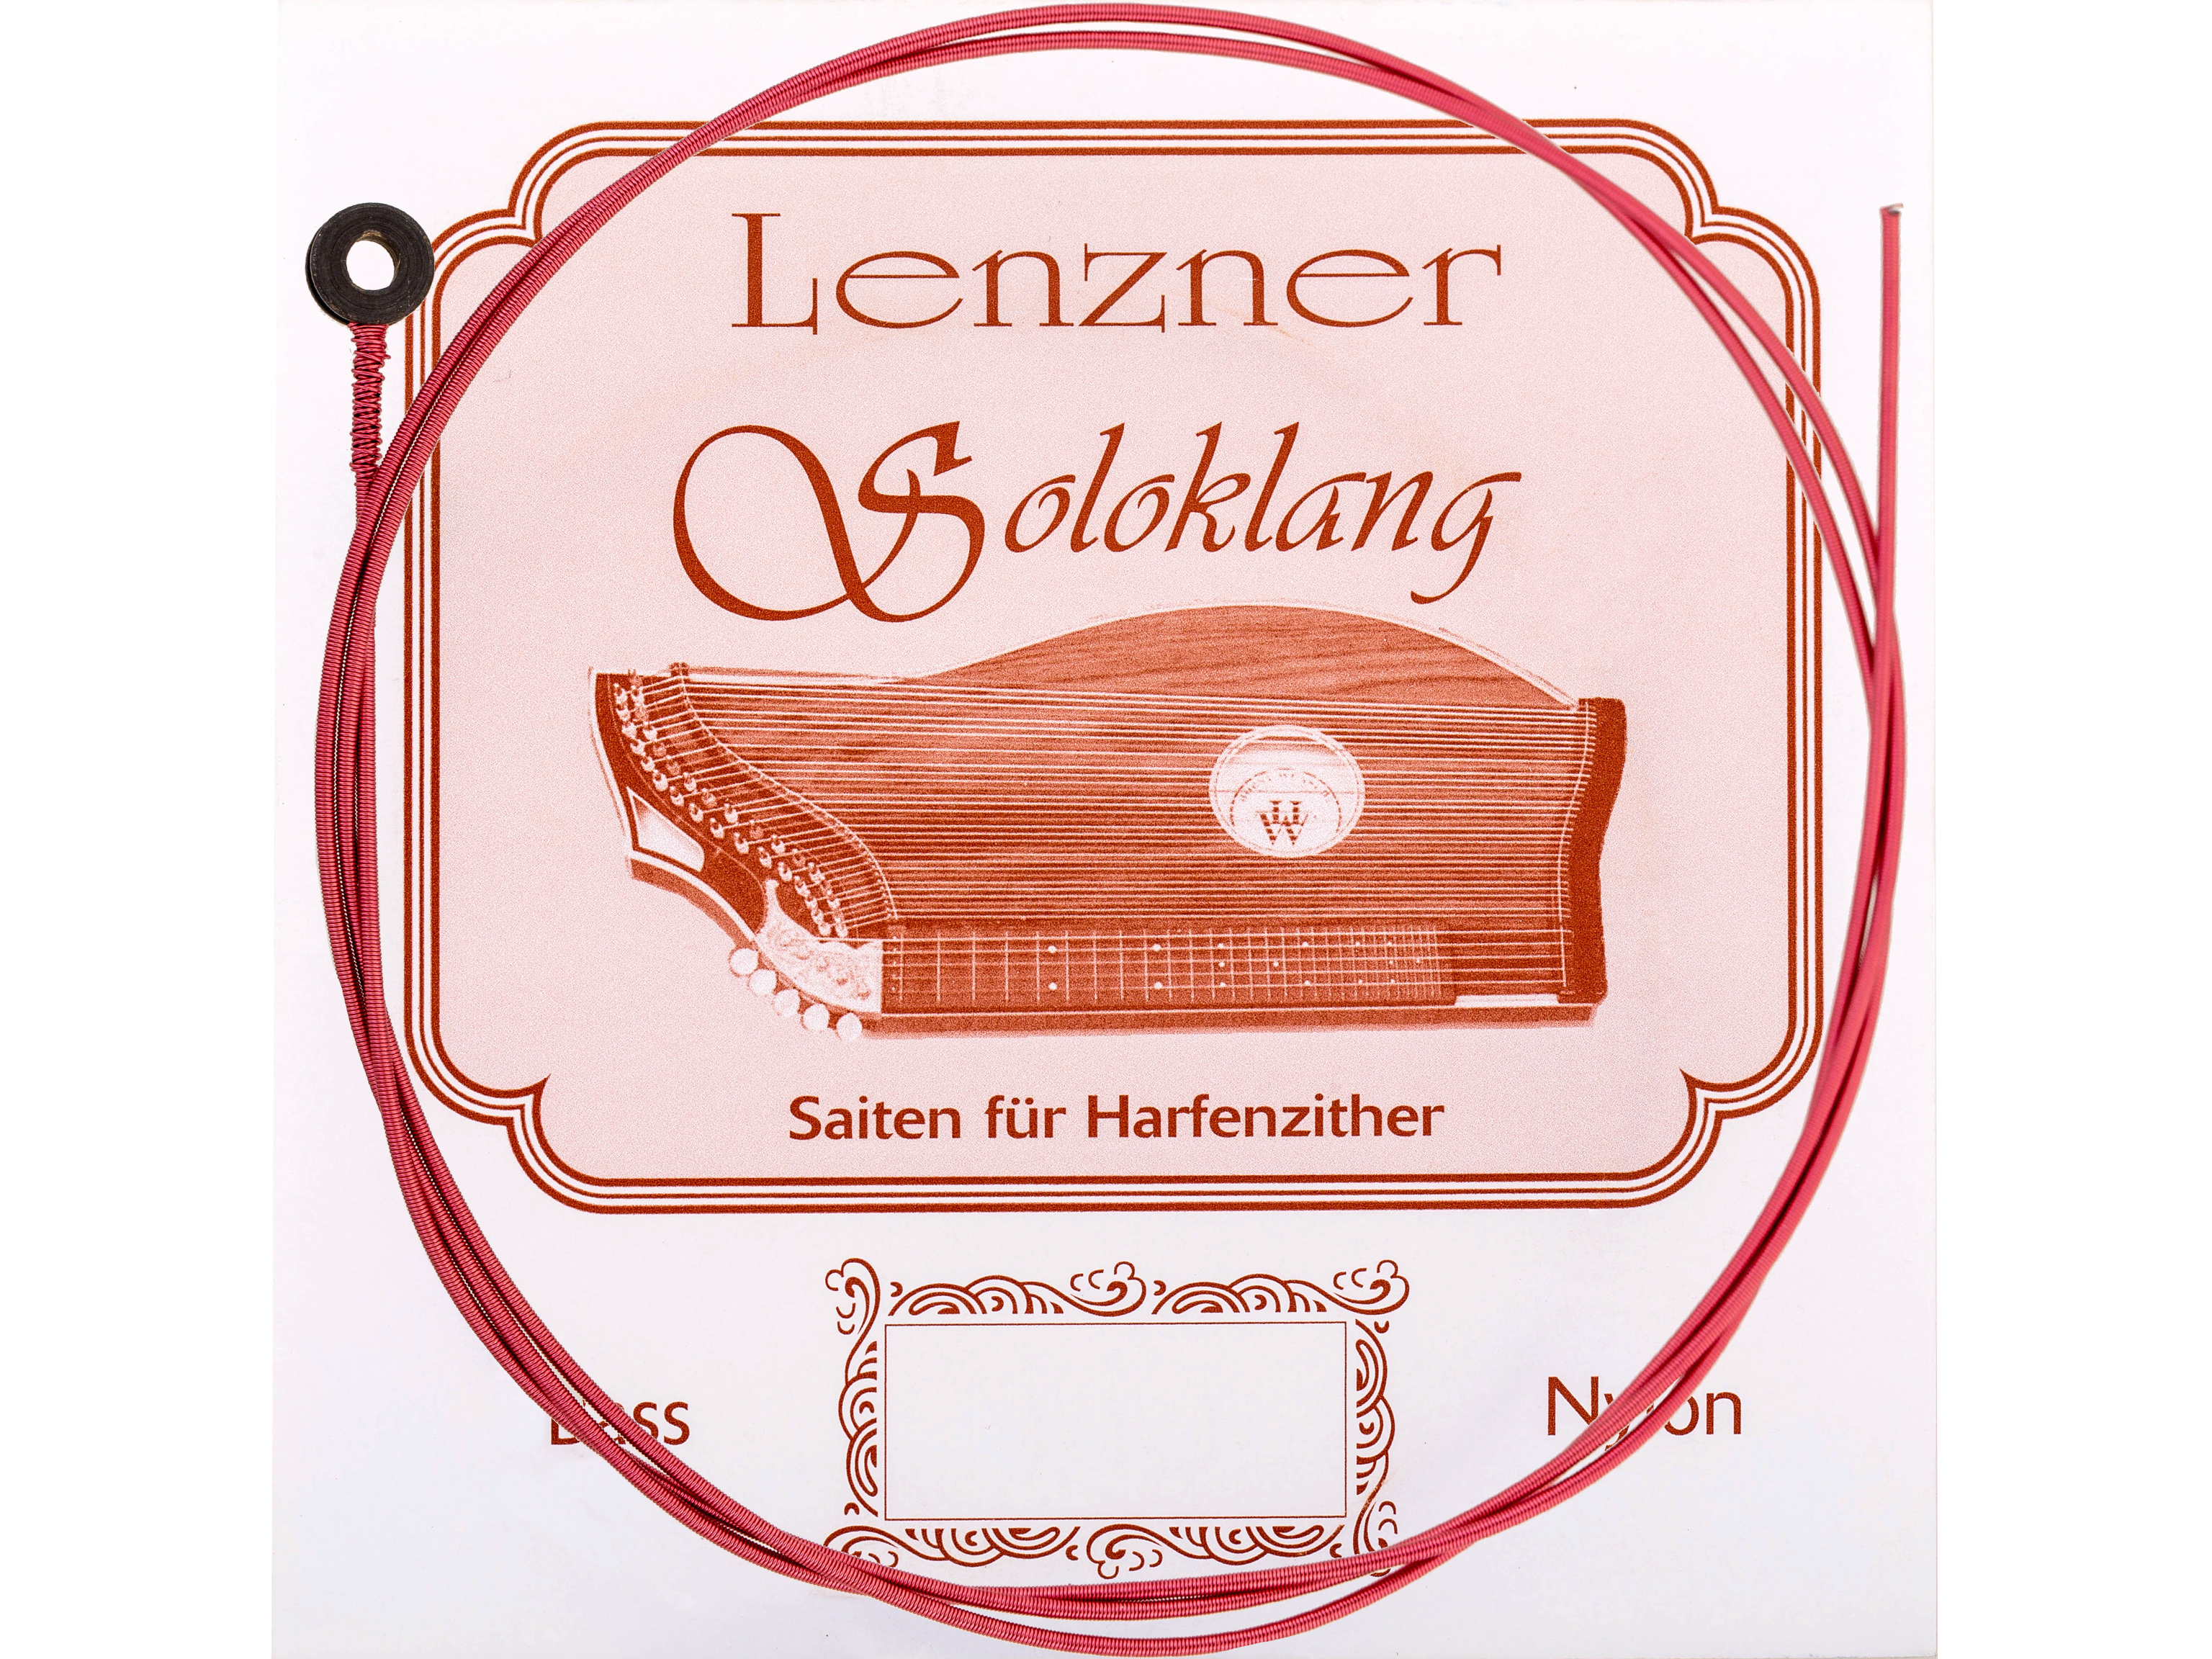 Lenzner B 14.Zithersaite Soloklang Bass